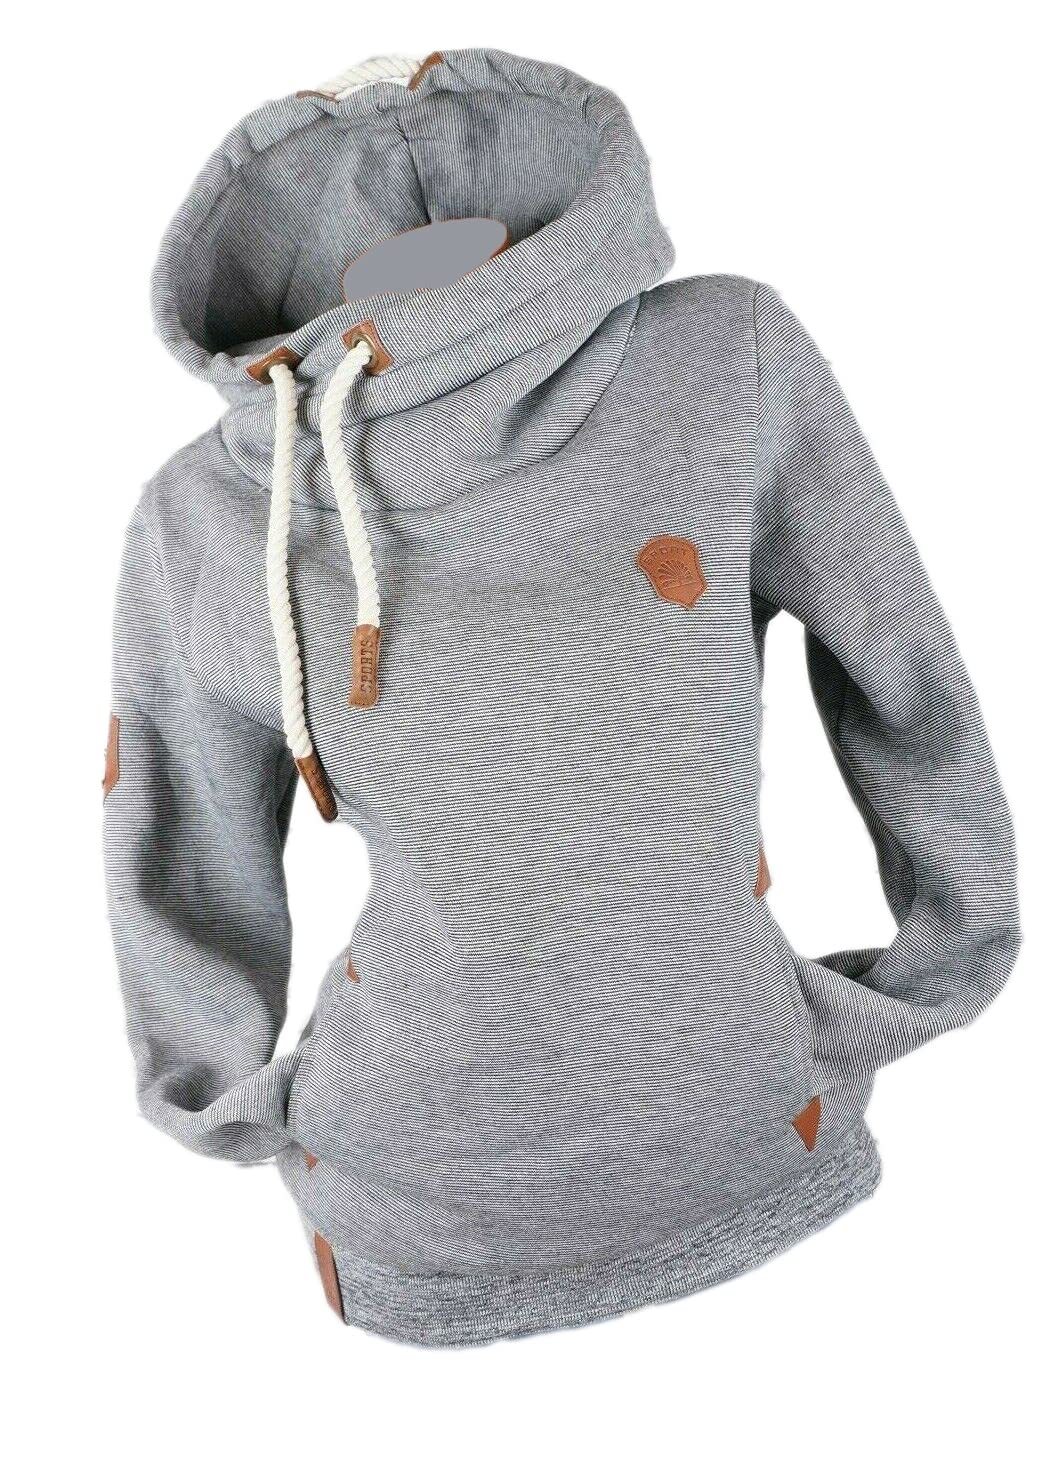 xy Damen Hoodie Kapuzenpullover Sweatshirt Warmer Fleece Pulli M L XL 2XL 3XL (Grau, L, l)